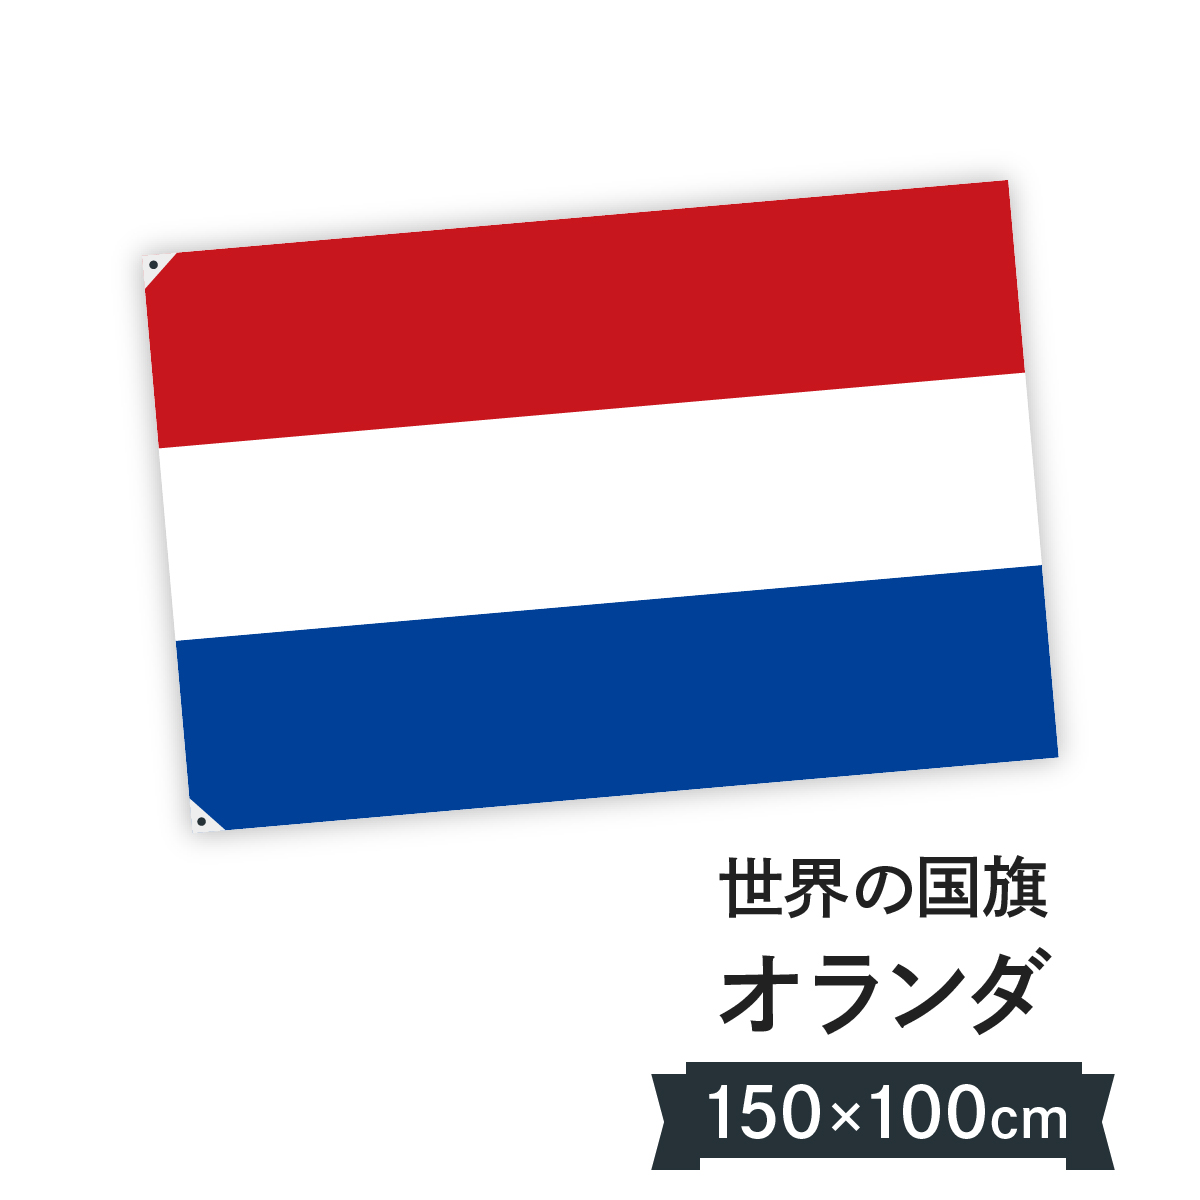 楽天市場 オランダ 国旗 W150cm H100cm グッズプロ